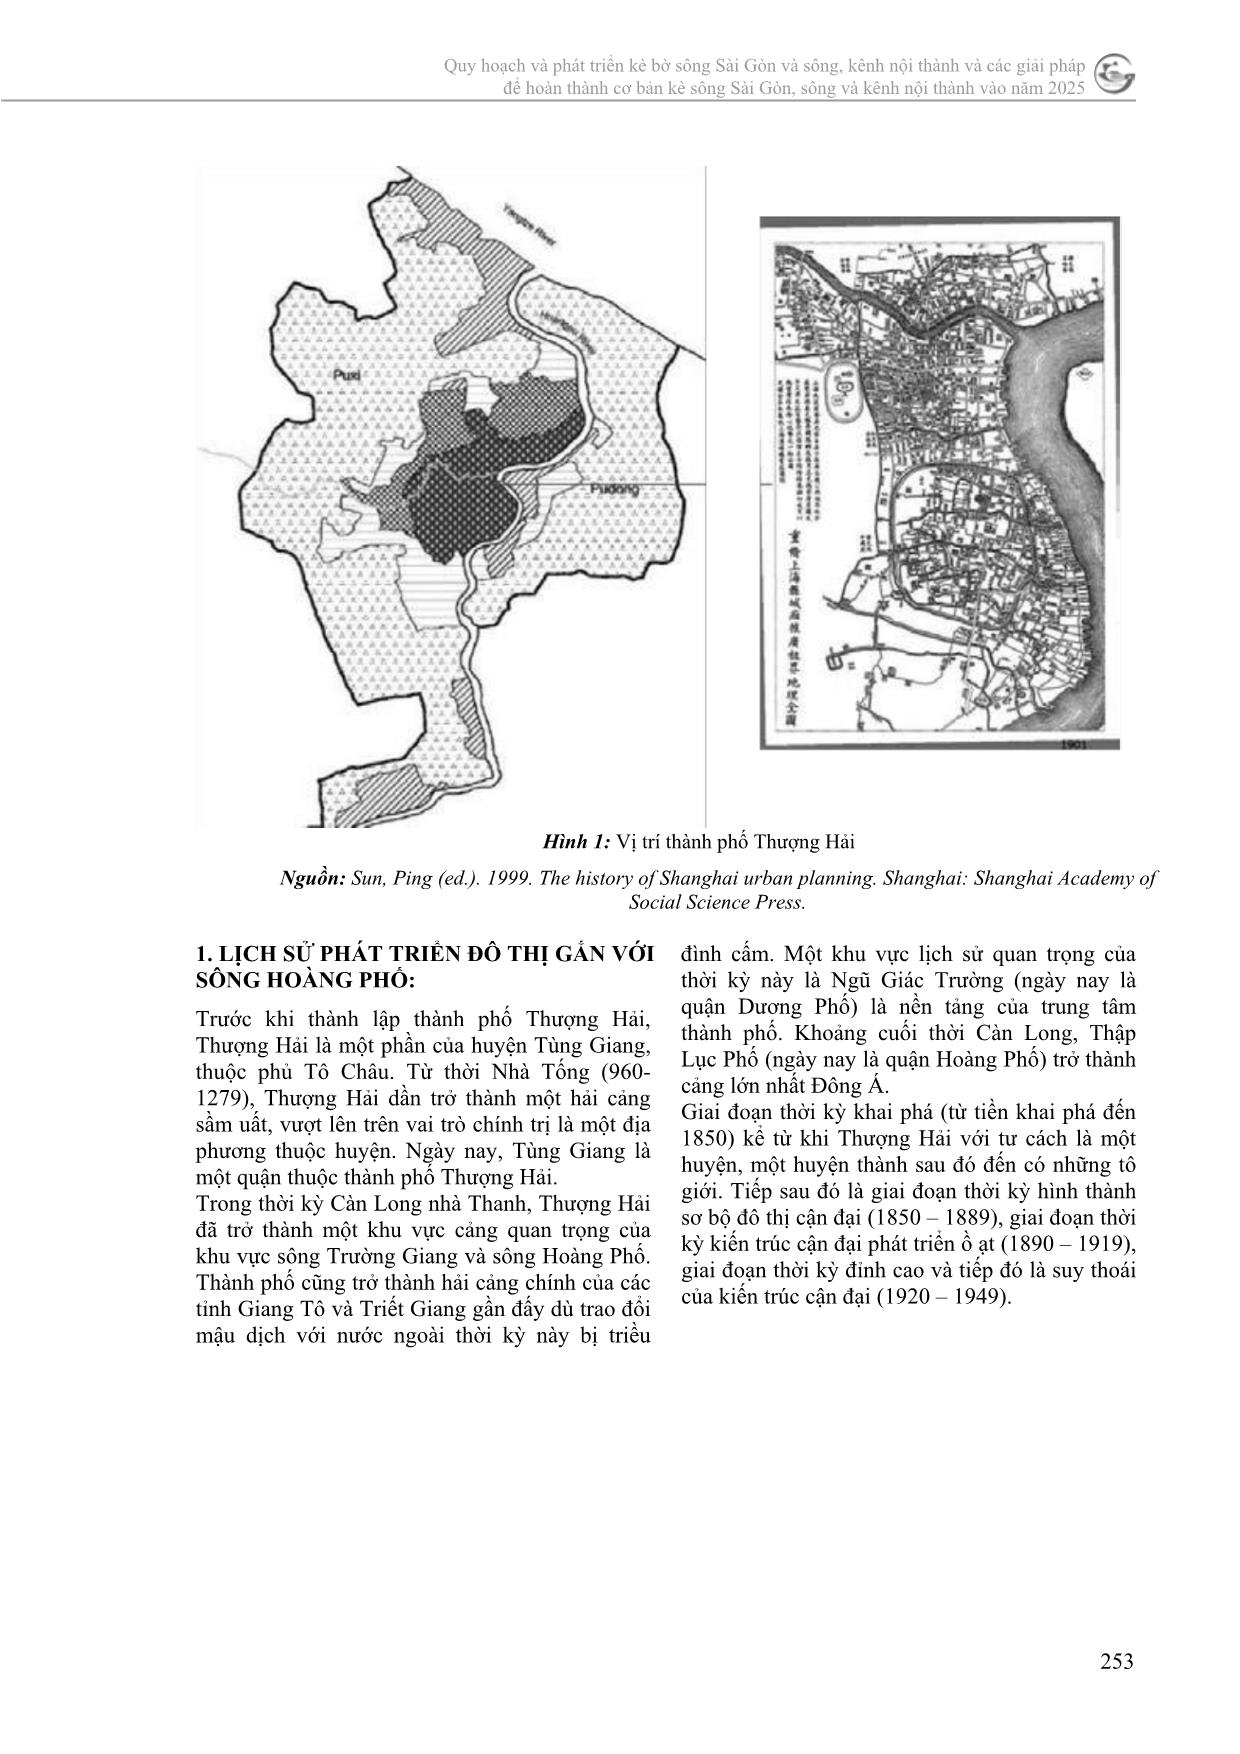 Kinh nghiệm quy hoạch theo mô hình “sponge city” tại đô thị Thượng Hải, Trung Quốc trang 2